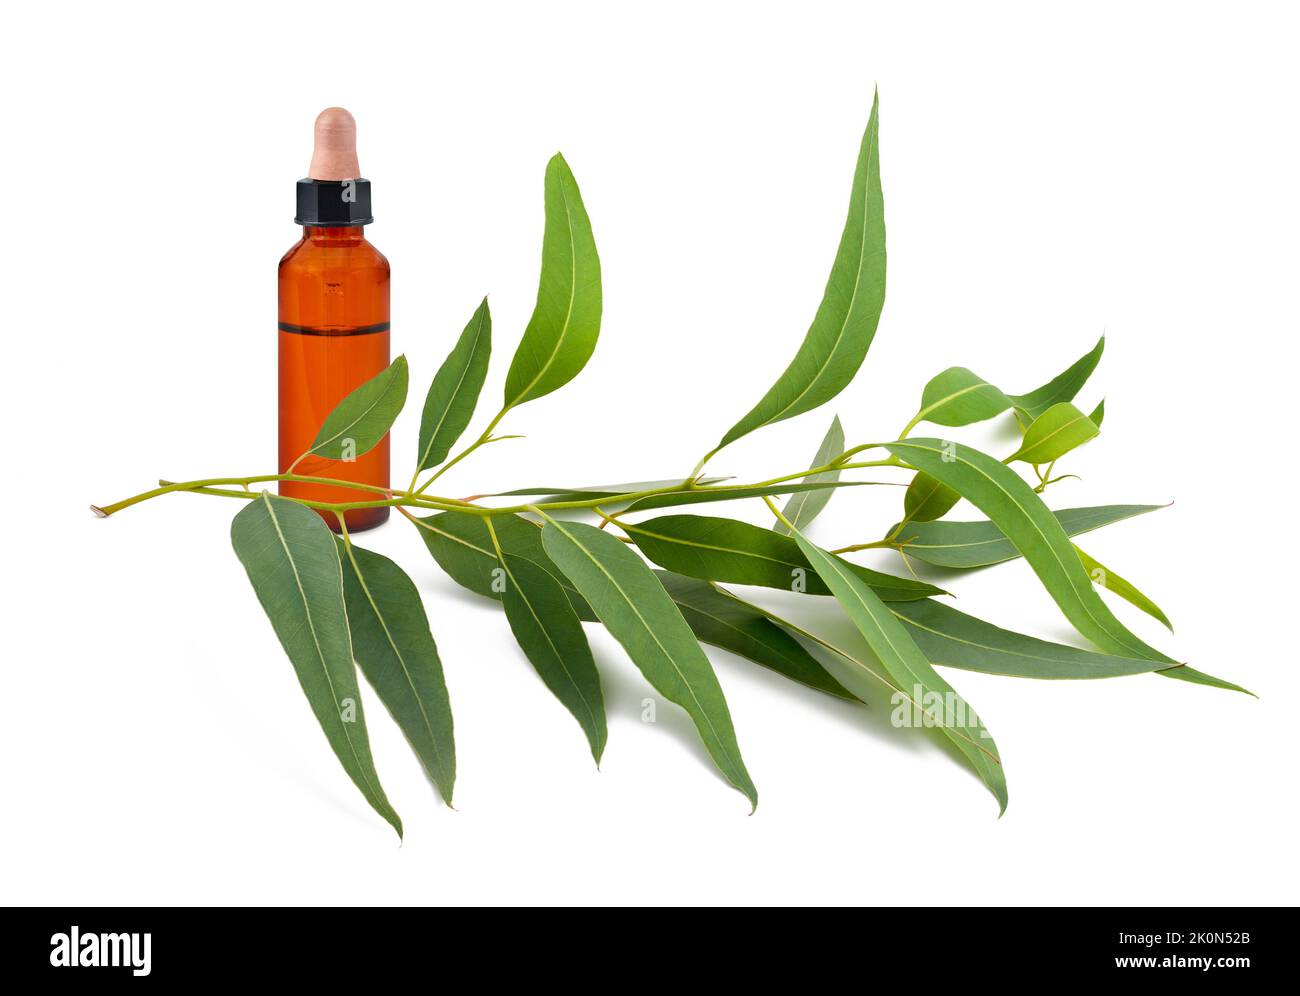 Eukalyptuszweig mit Flasche mit ätherischem Öl isoliert auf weiß Stockfoto